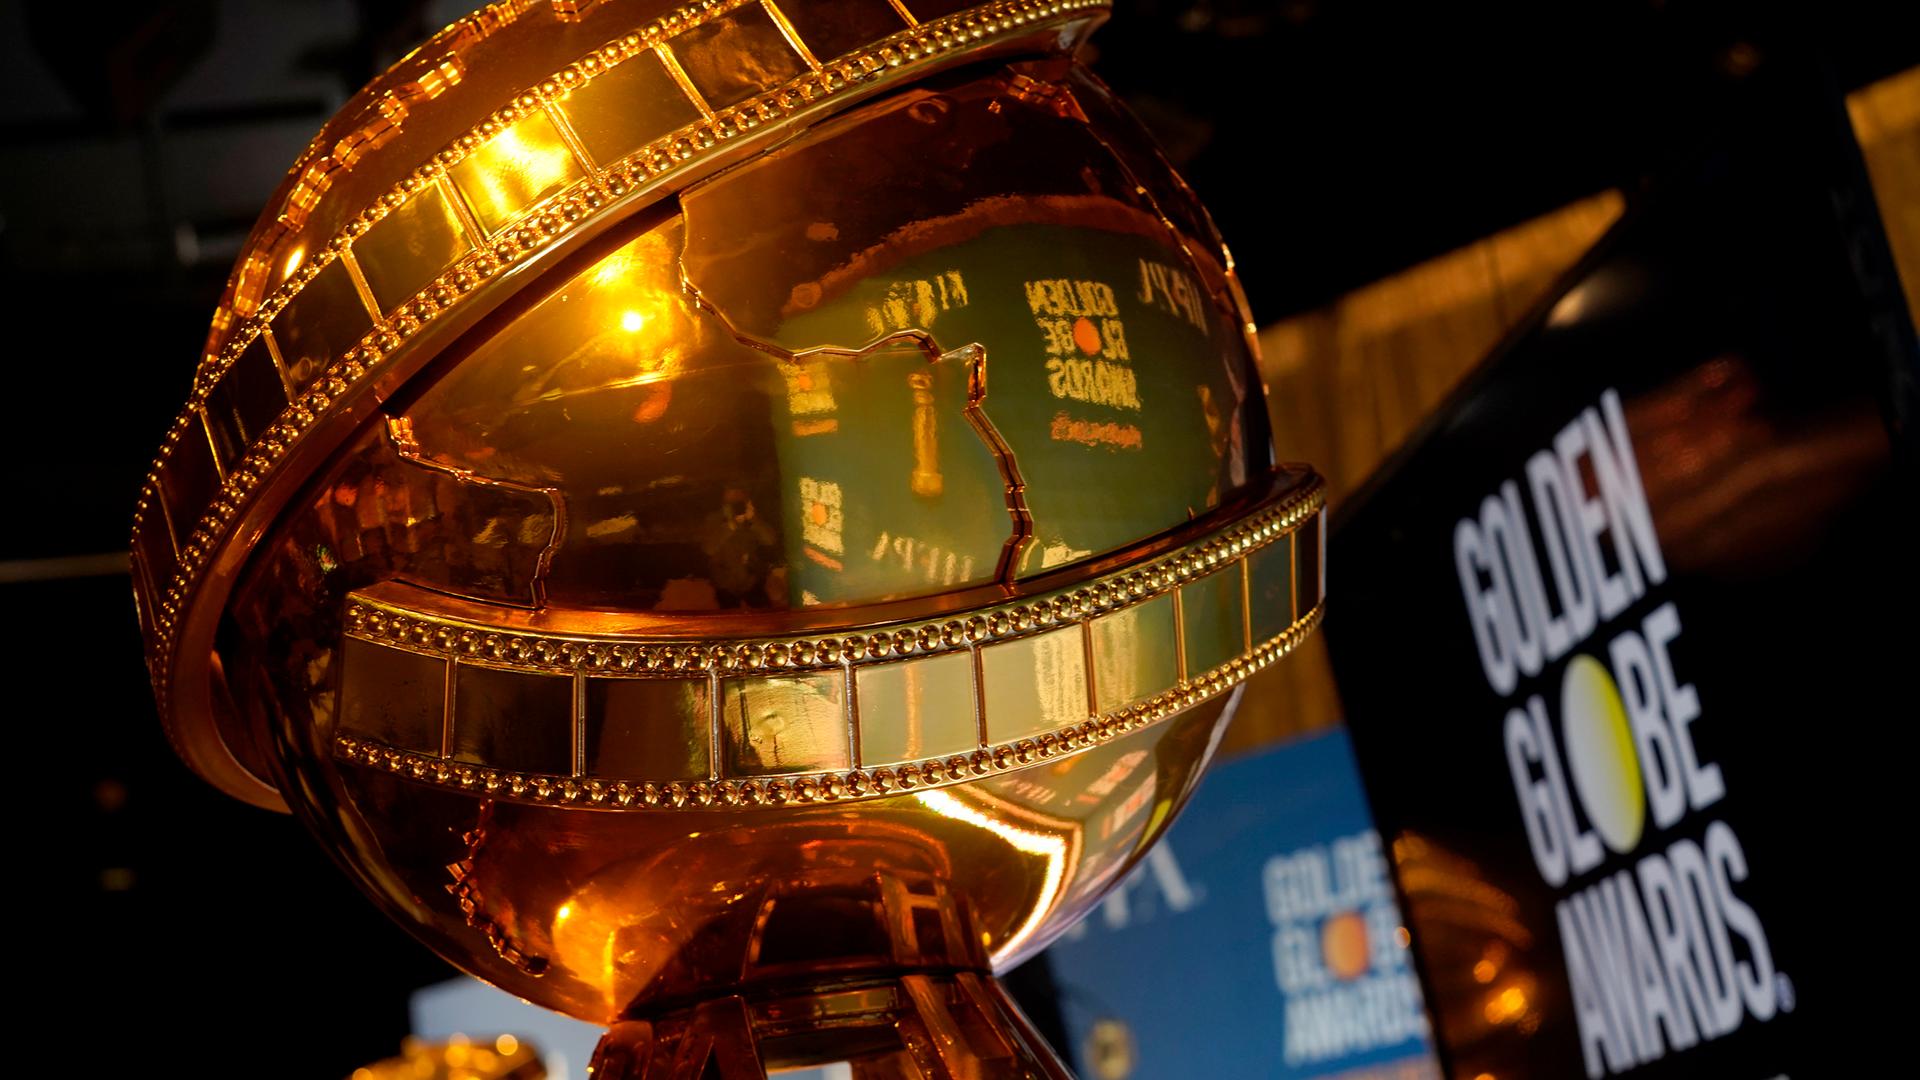 Das Bild zeigt einen Golden Globe, einen der begehrtesten Fimpreise weltweit.